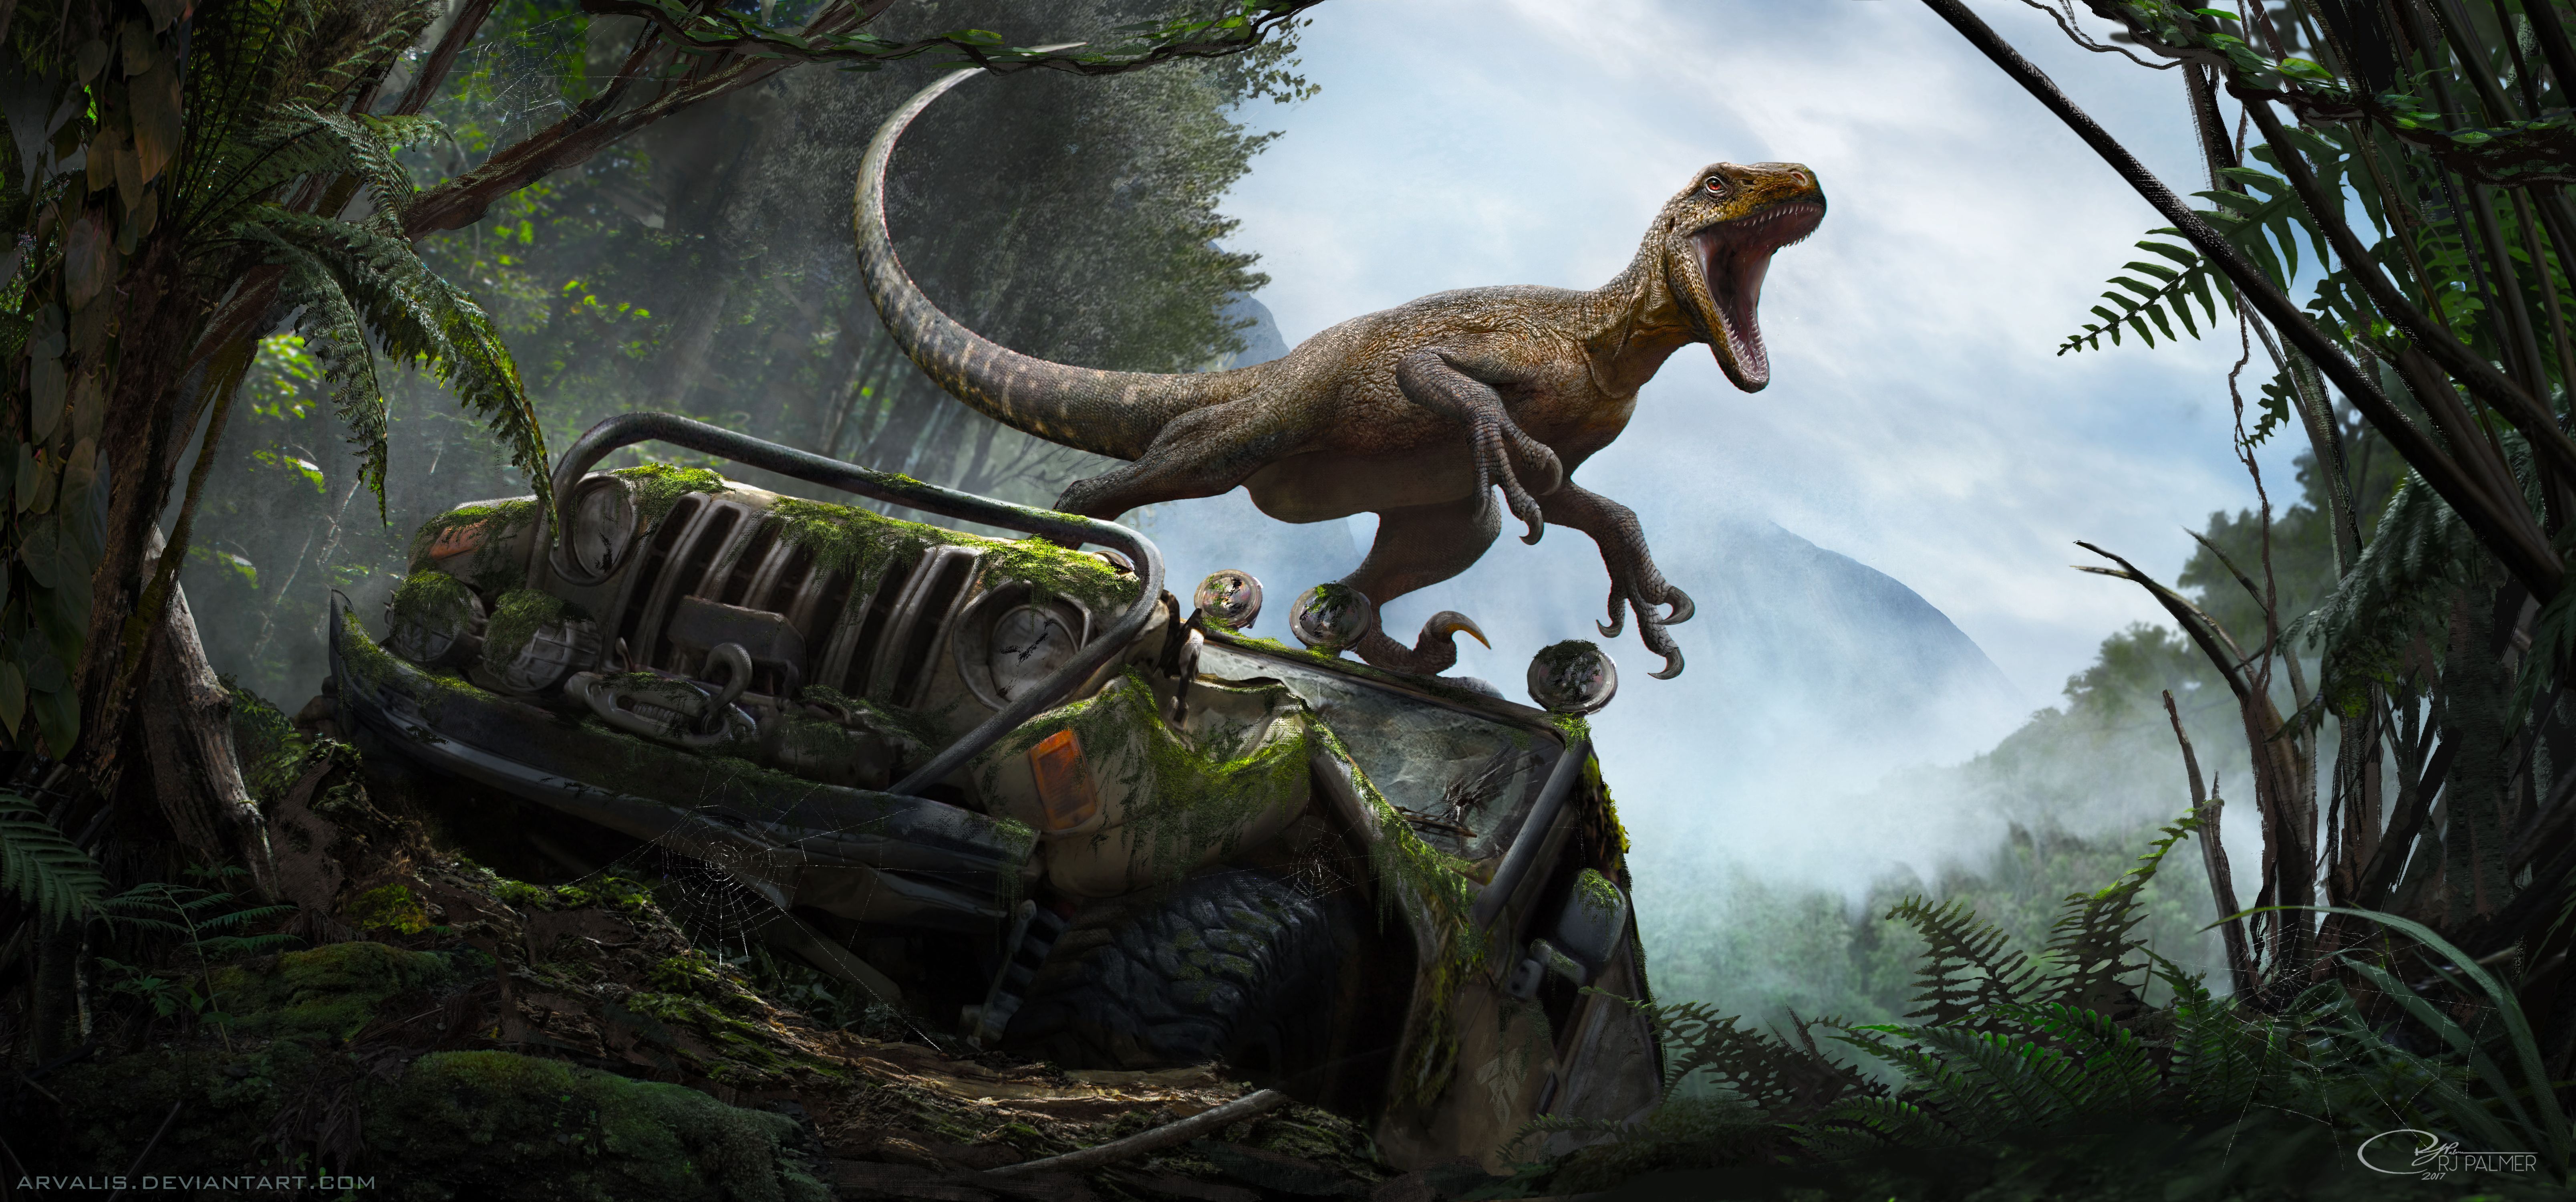 Dinosaur 4K Wallpapers - Los mejores fondos de Dinosaur 4K gratis